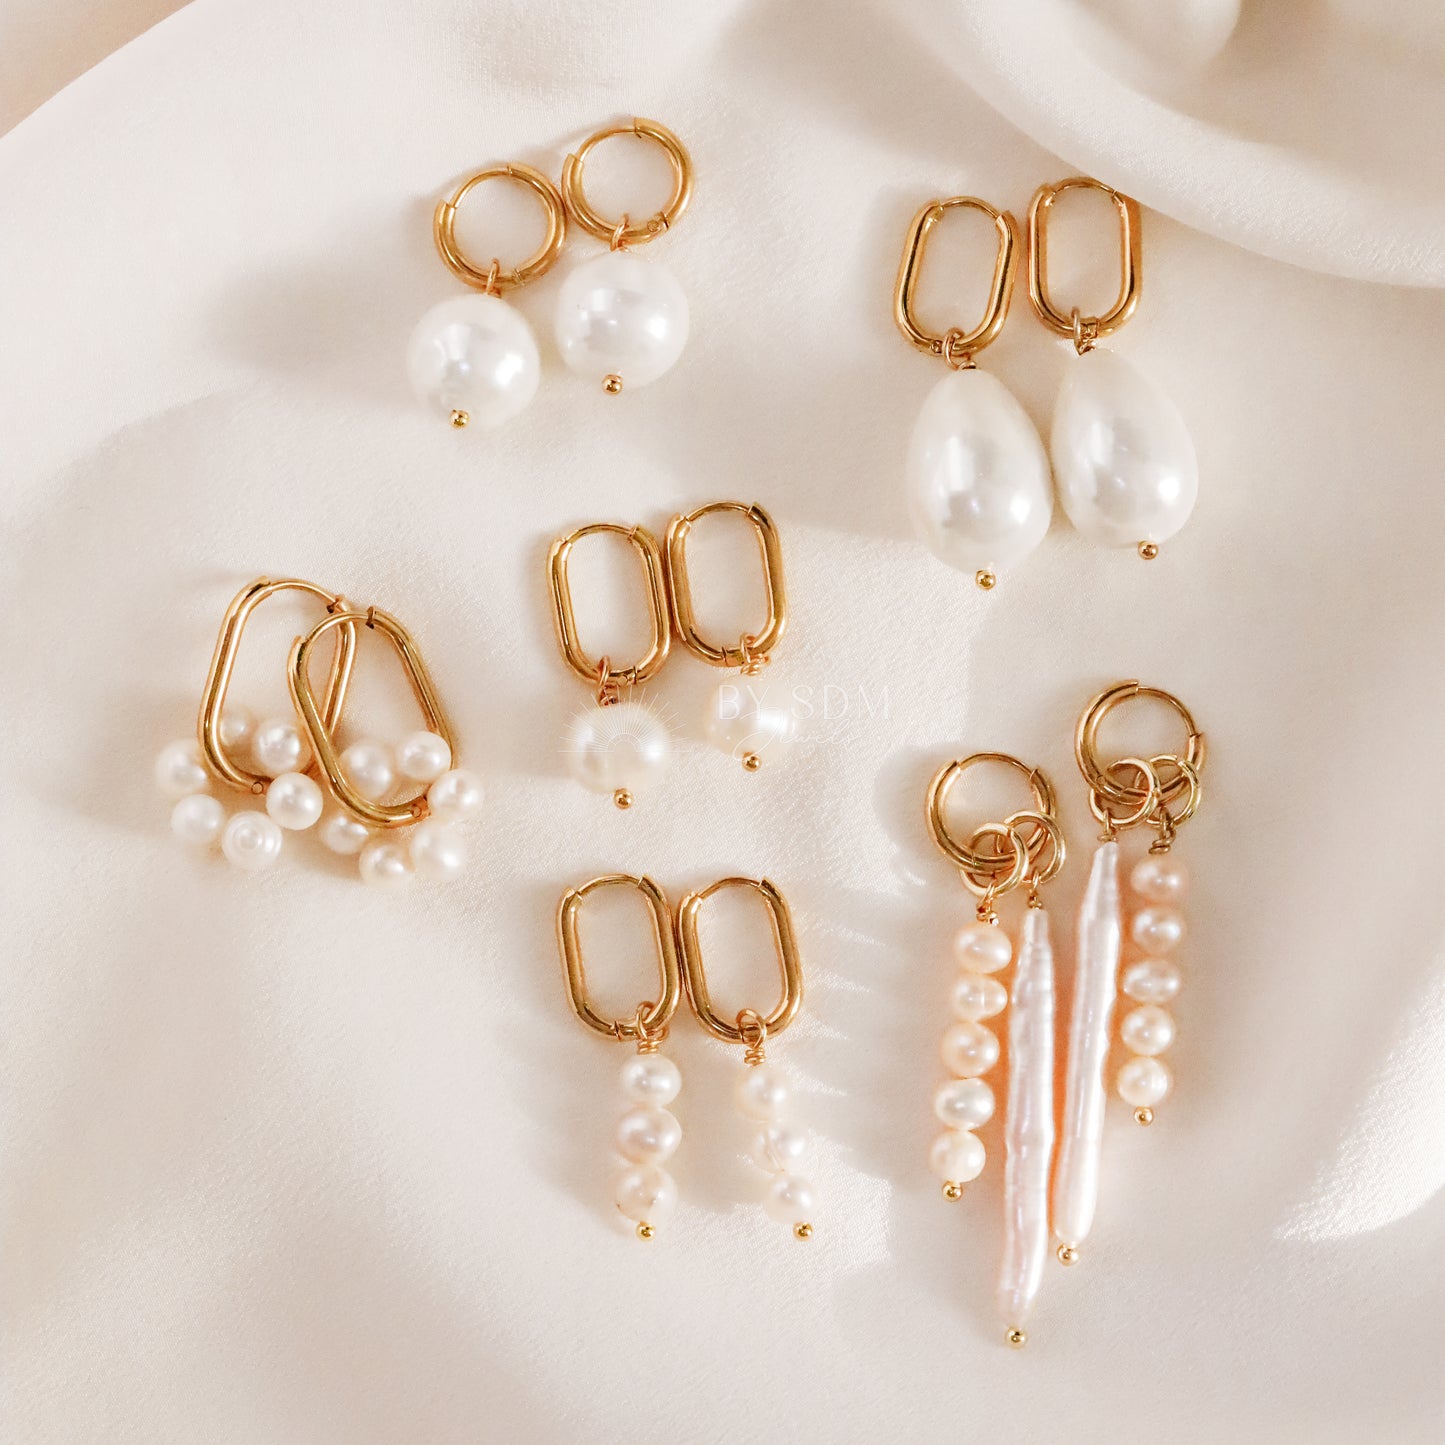 Pearl Hoops Earrings • Pearl Huggie Hoop Earrings • Pearl Jewelry • Oval Hoops • Bridesmaids Jewelry • Gift for Mom • BYSDMJEWELS